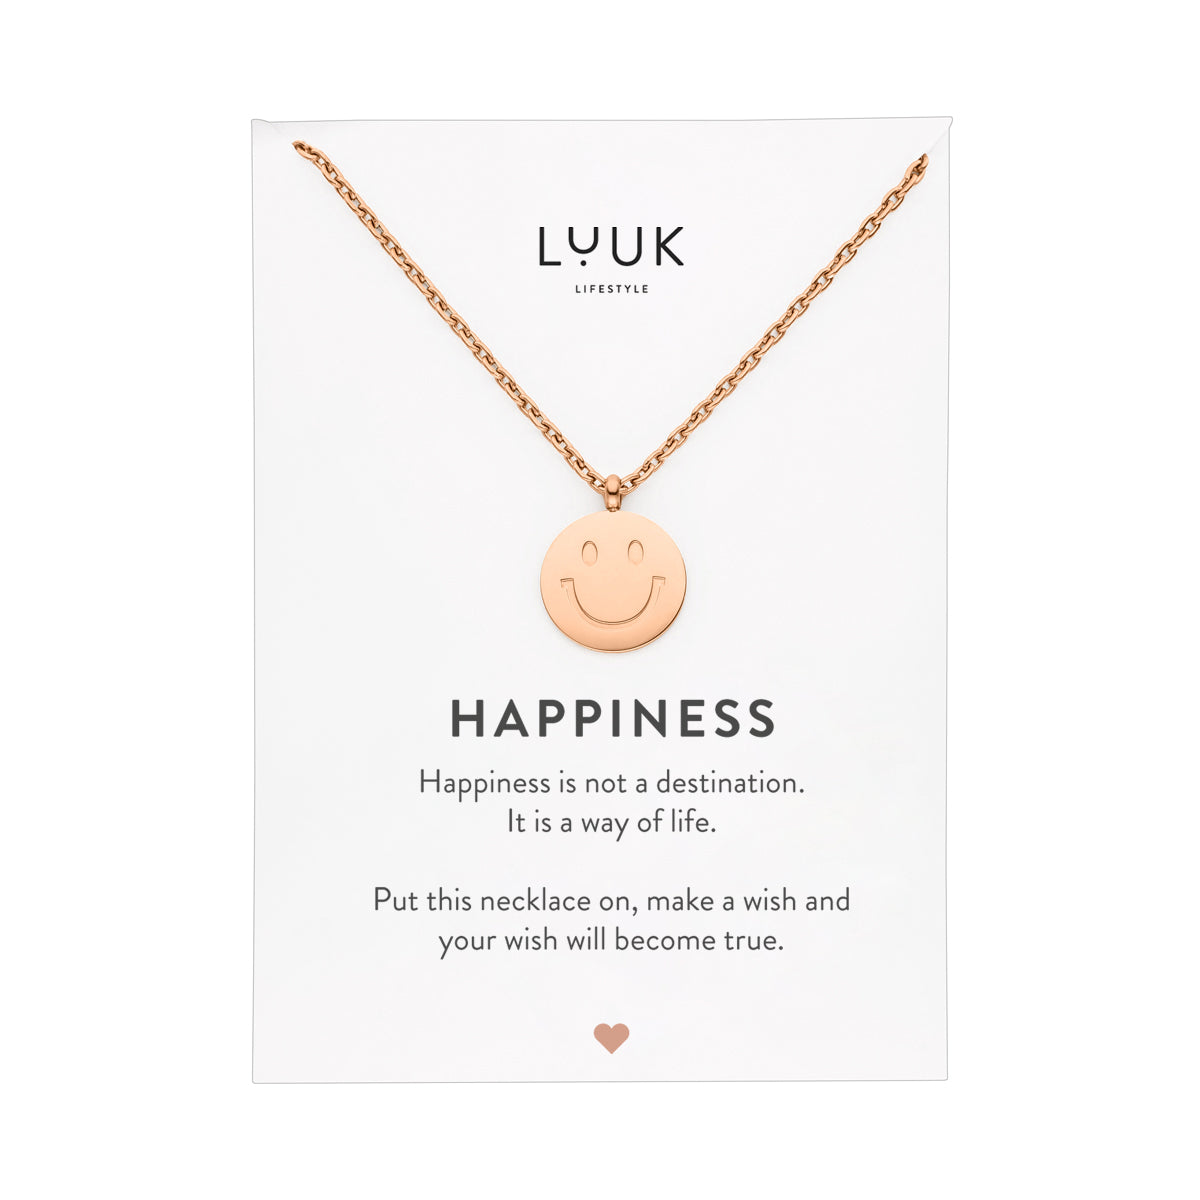 Rosegoldene Halskette mit Smiley Anhänger auf Happiness Karte von Luuk Lifestyle.